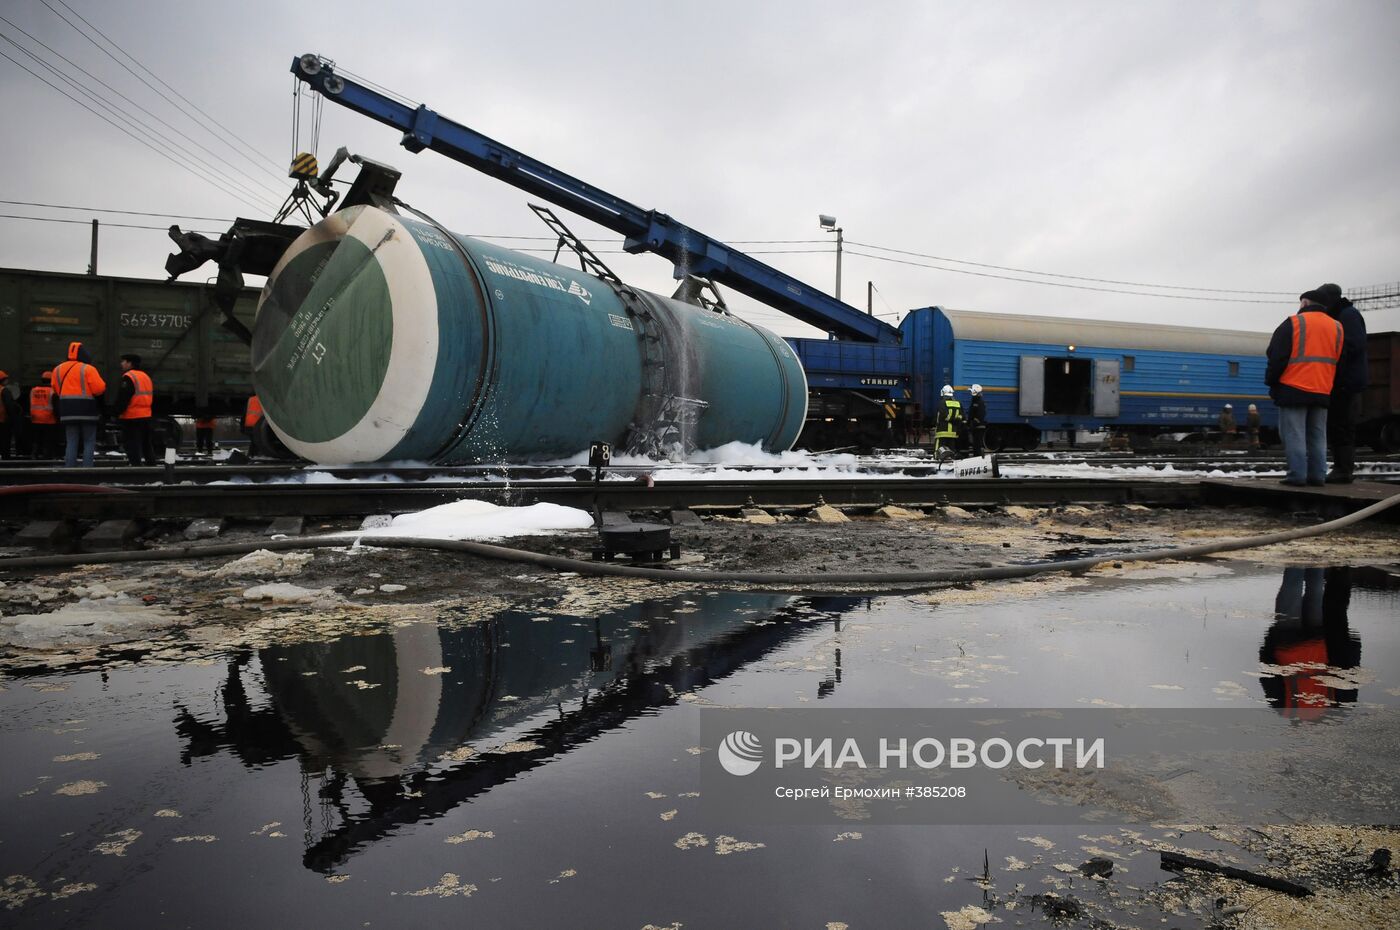 Железнодорожная авария на станции Шушары под Санкт-Петербургом